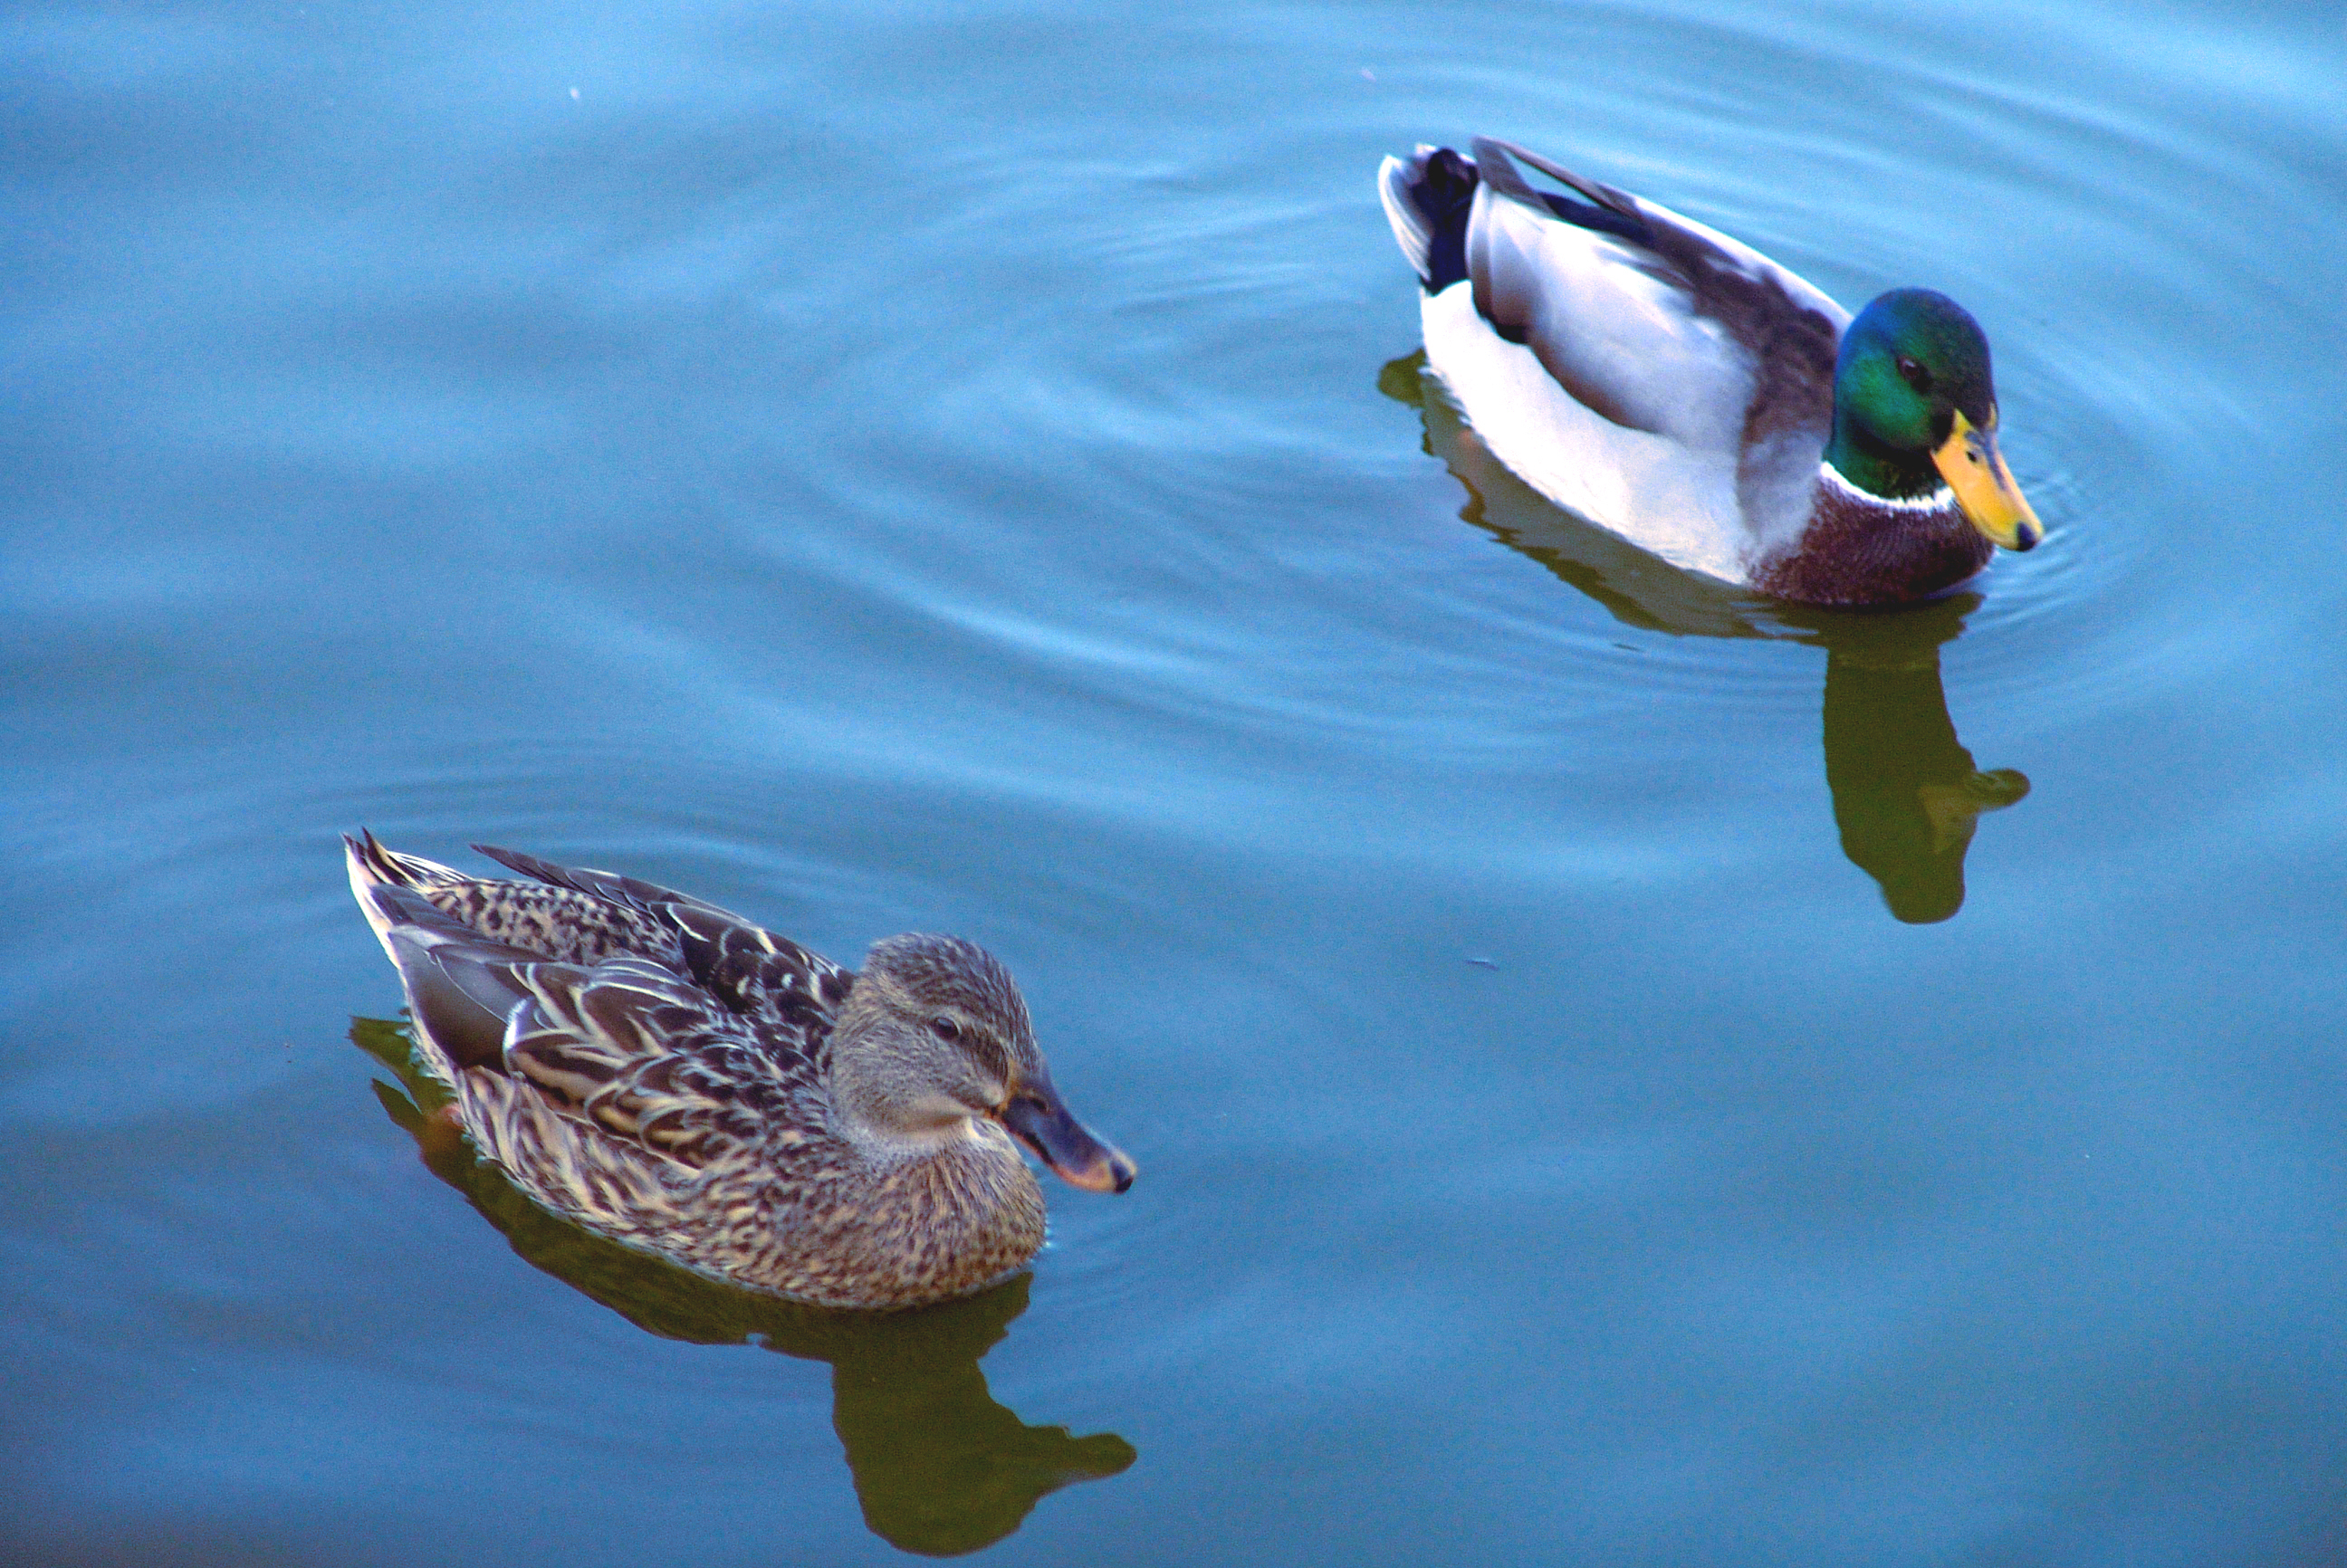 Swimming ducks photo